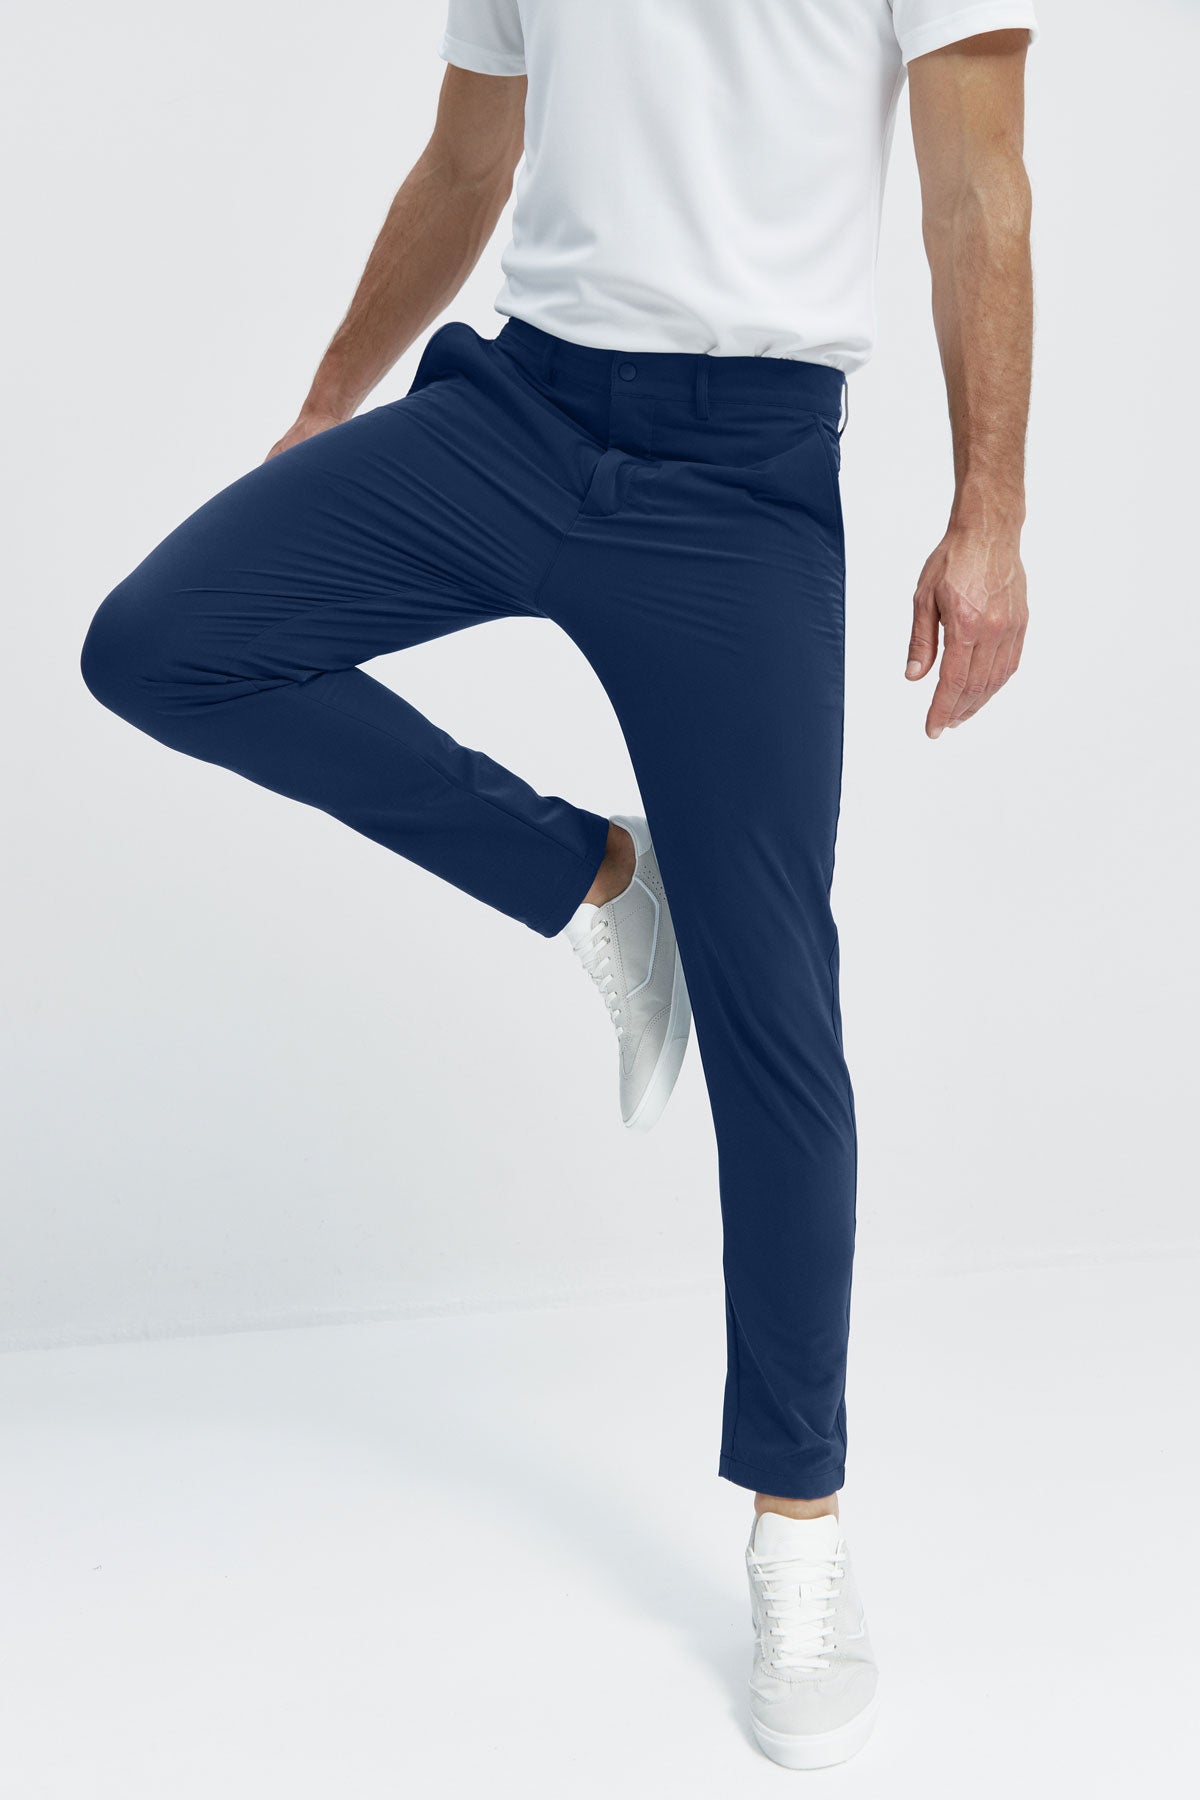 Pantalón para hombre azul marino: Pantalón chino slim azul marino para hombre con tecnología termorreguladora Coolmax. Foto flexibilidad